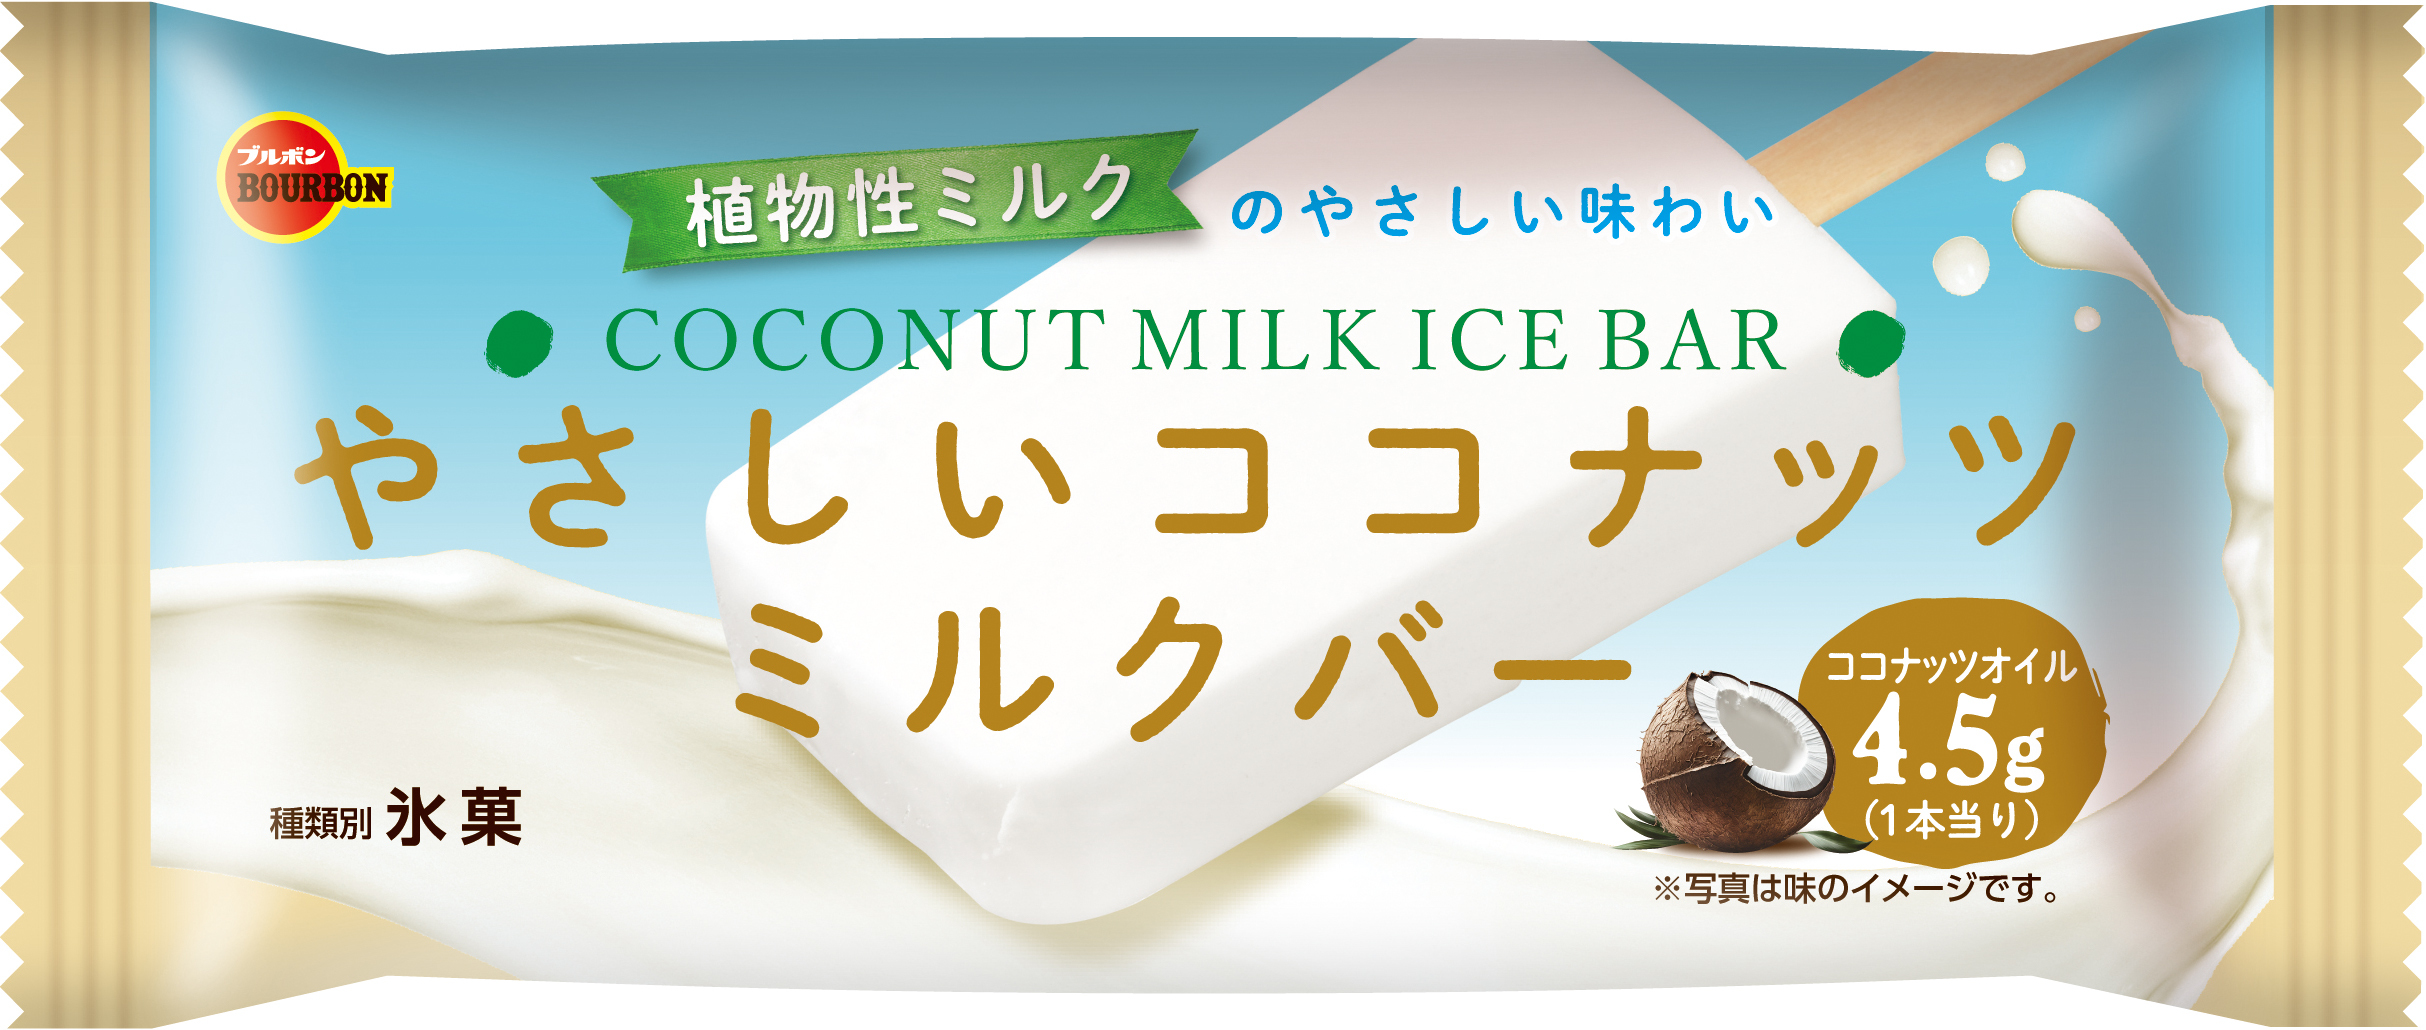 ブルボン、植物性ミルクのやさしい甘さあふれるアイスバー
「やさしいココナッツミルクバー」を9月25日(月)に新発売！